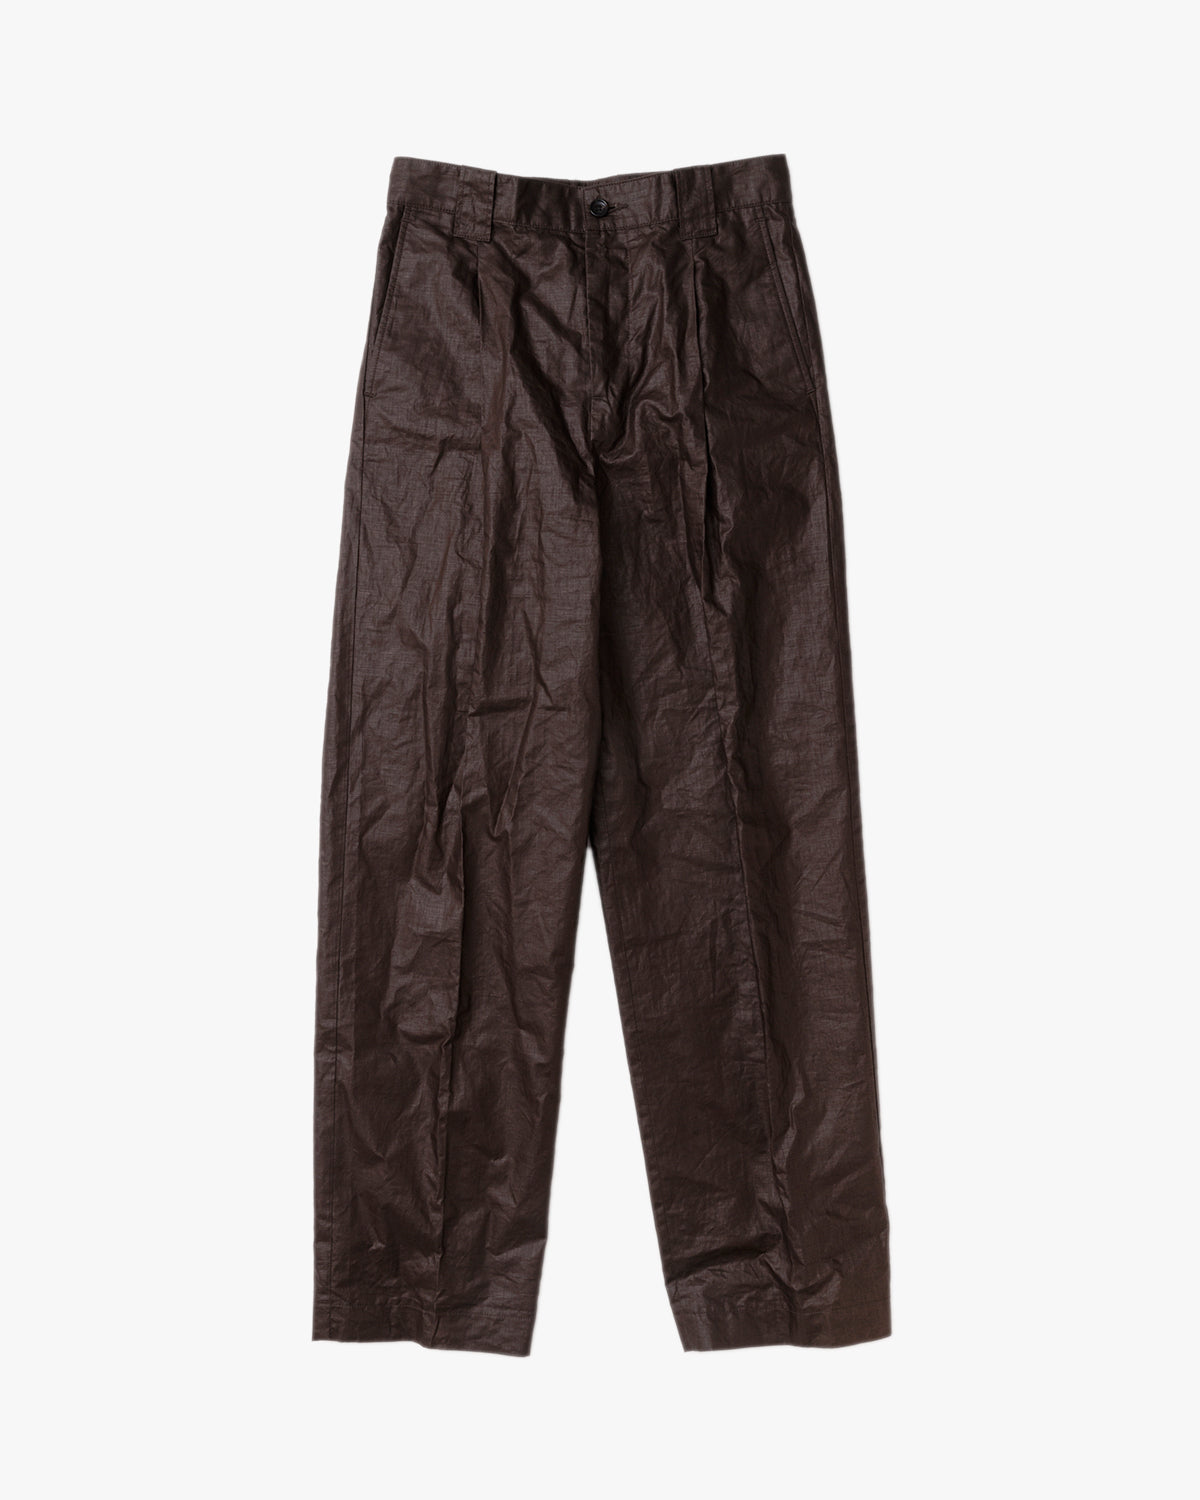 linen coating pants (brown/ beige)